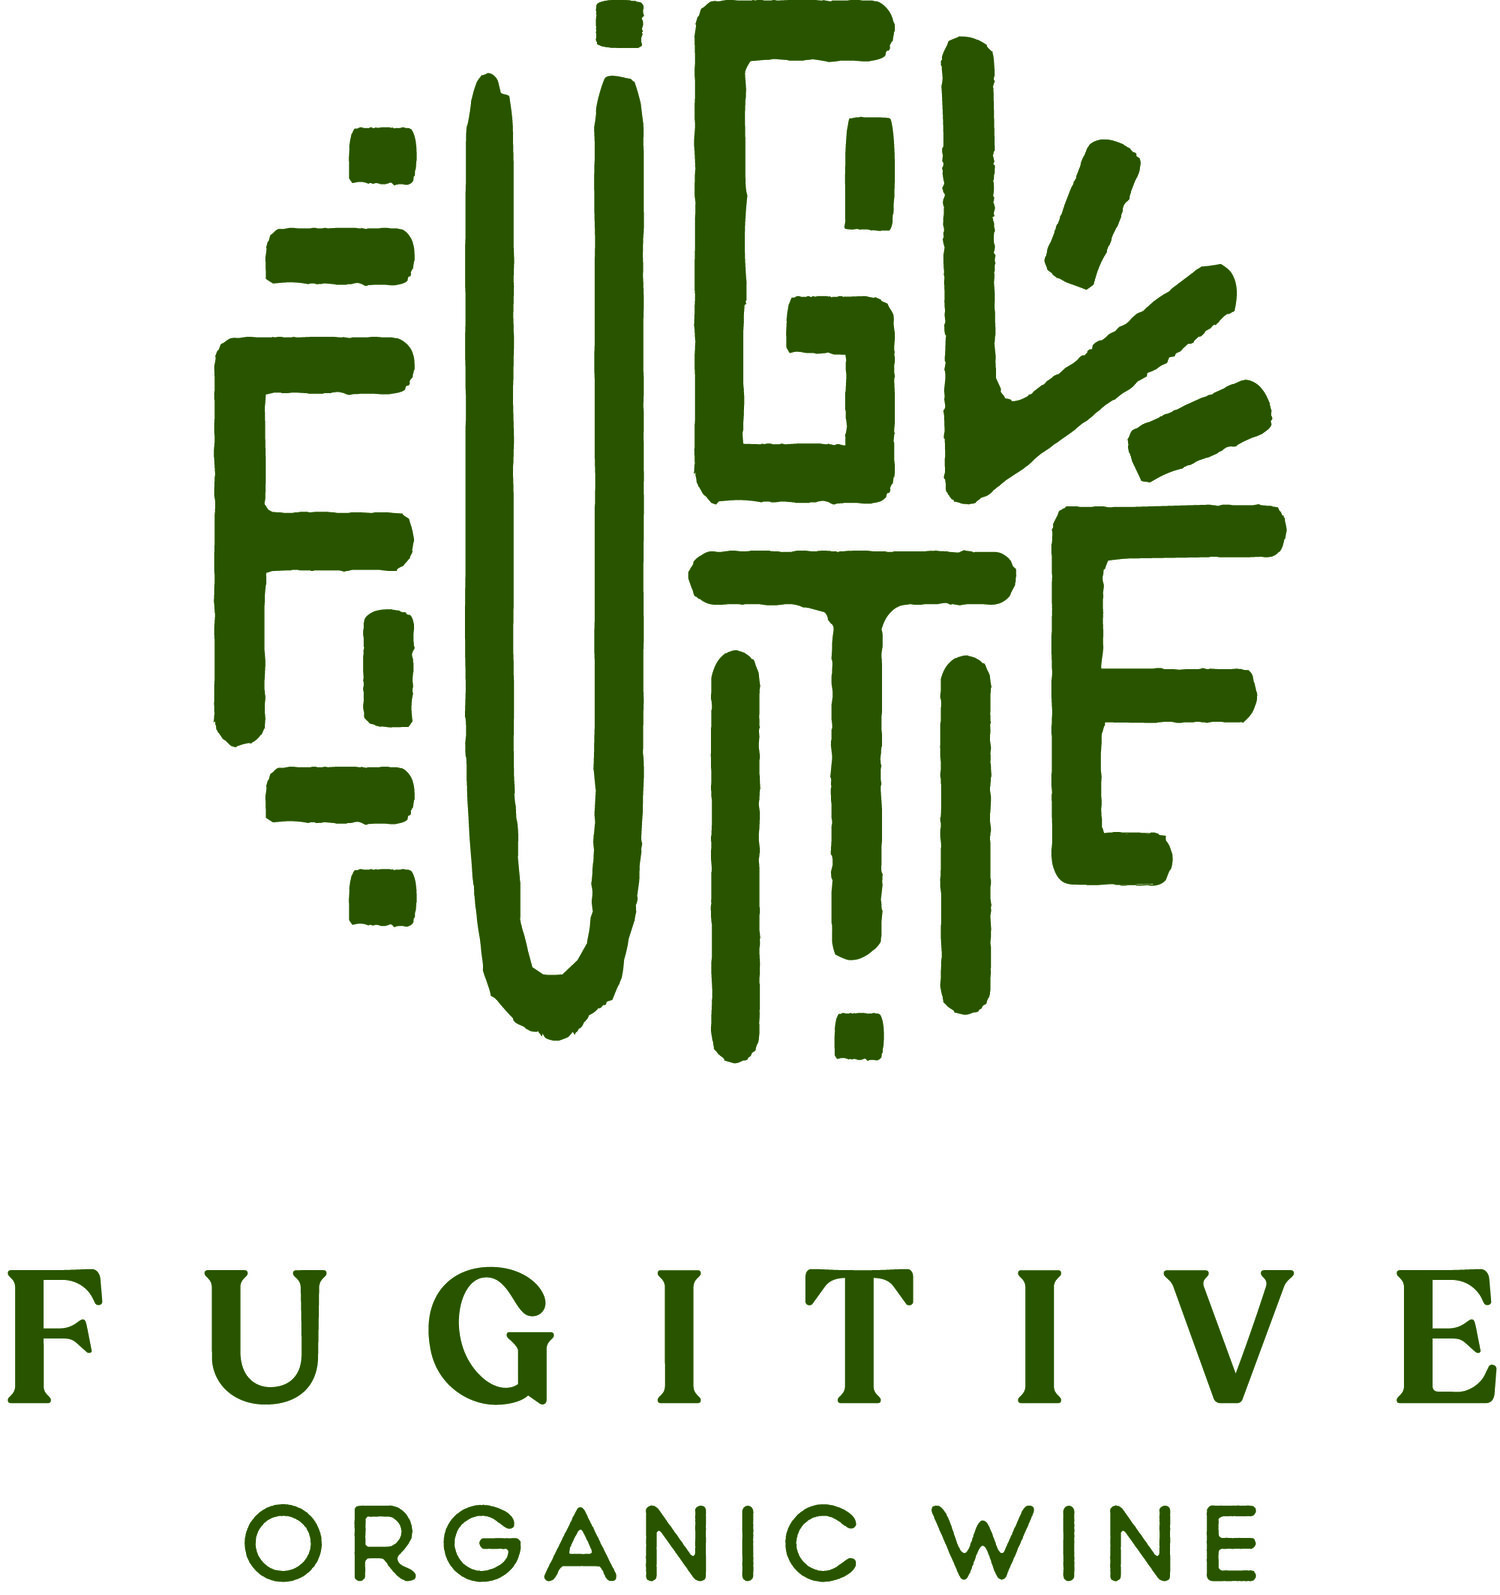 Fugitive Organic